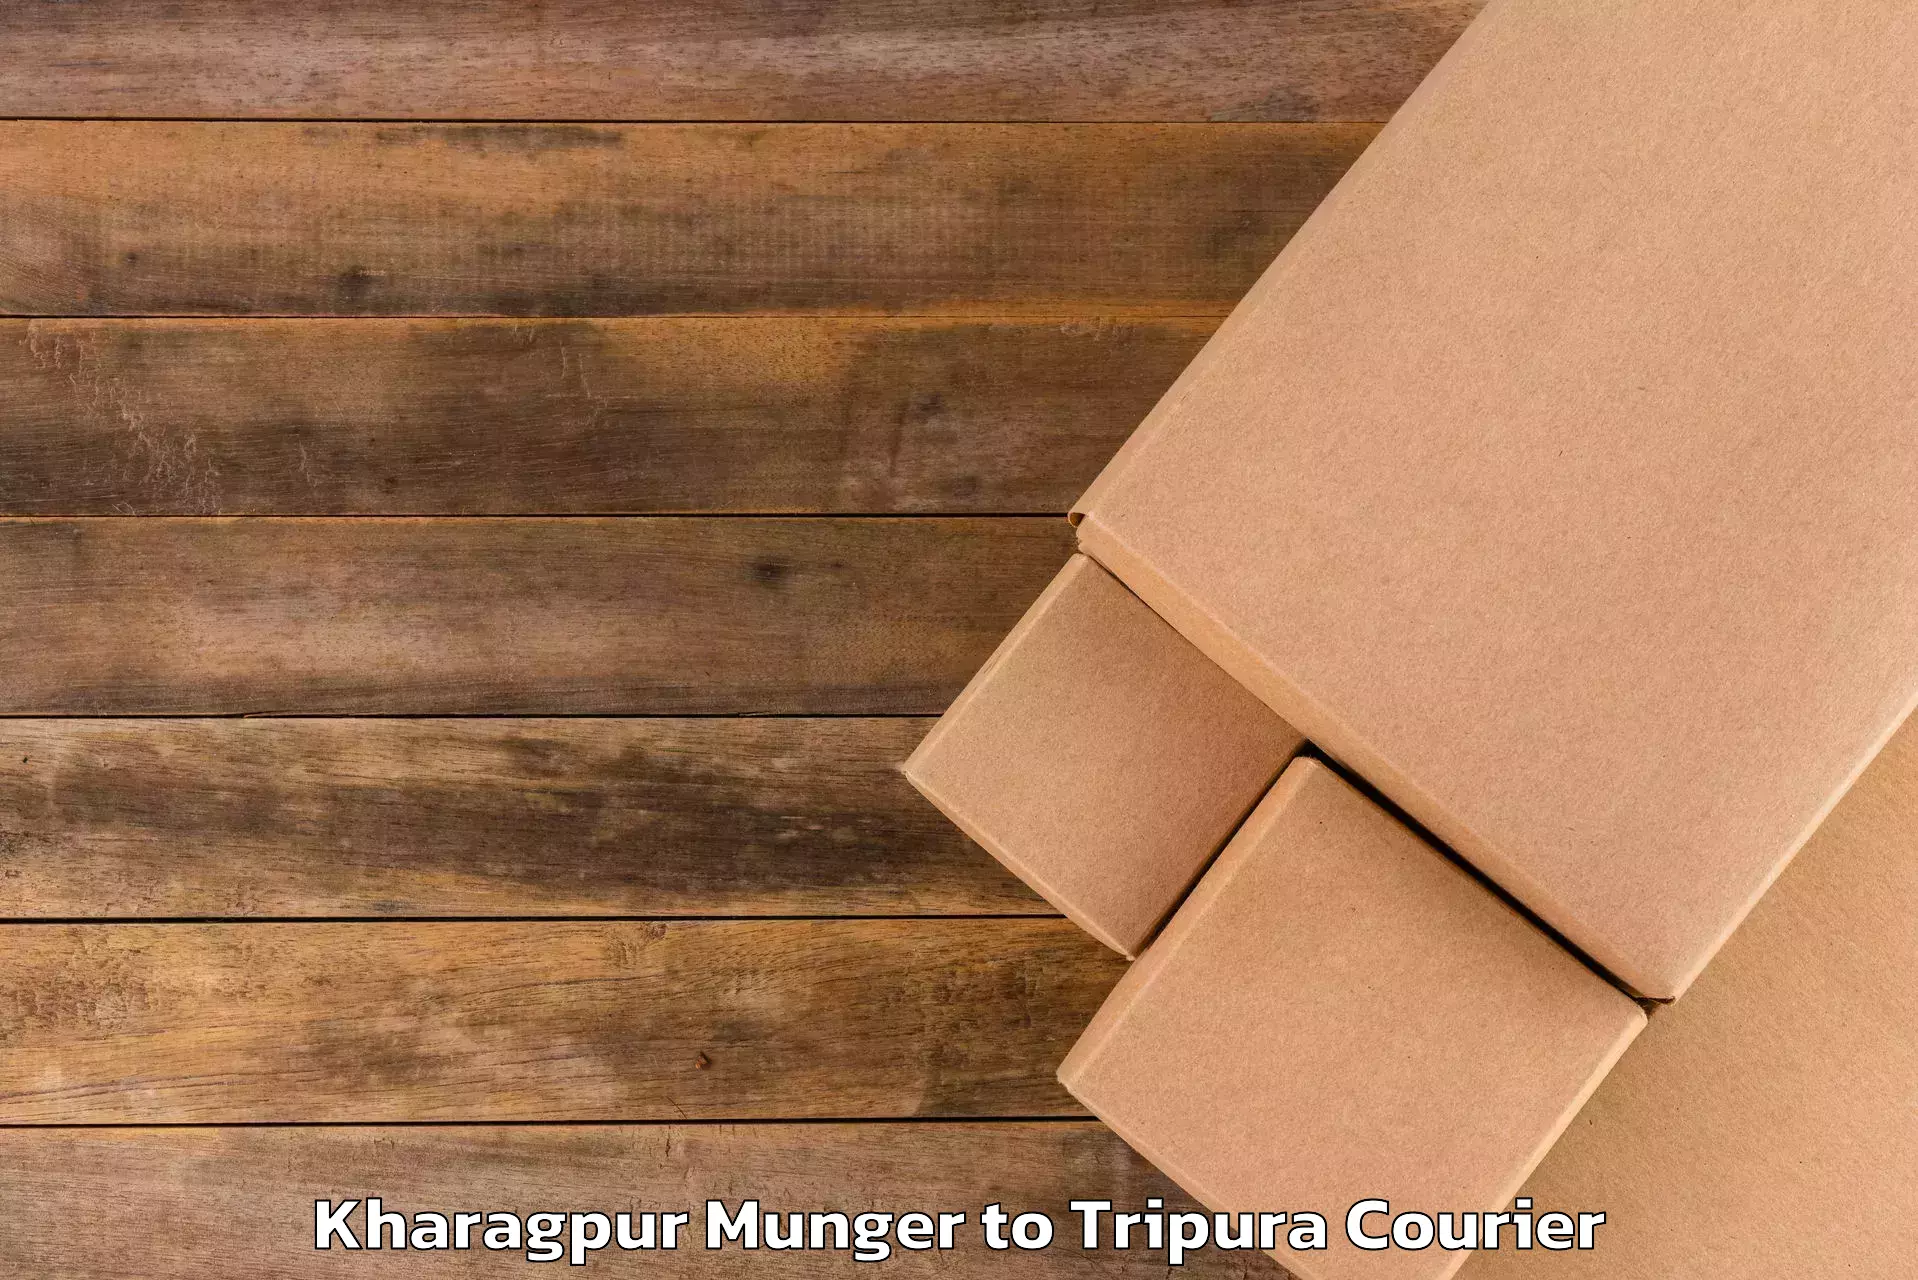 Luggage forwarding service Kharagpur Munger to Dhalai